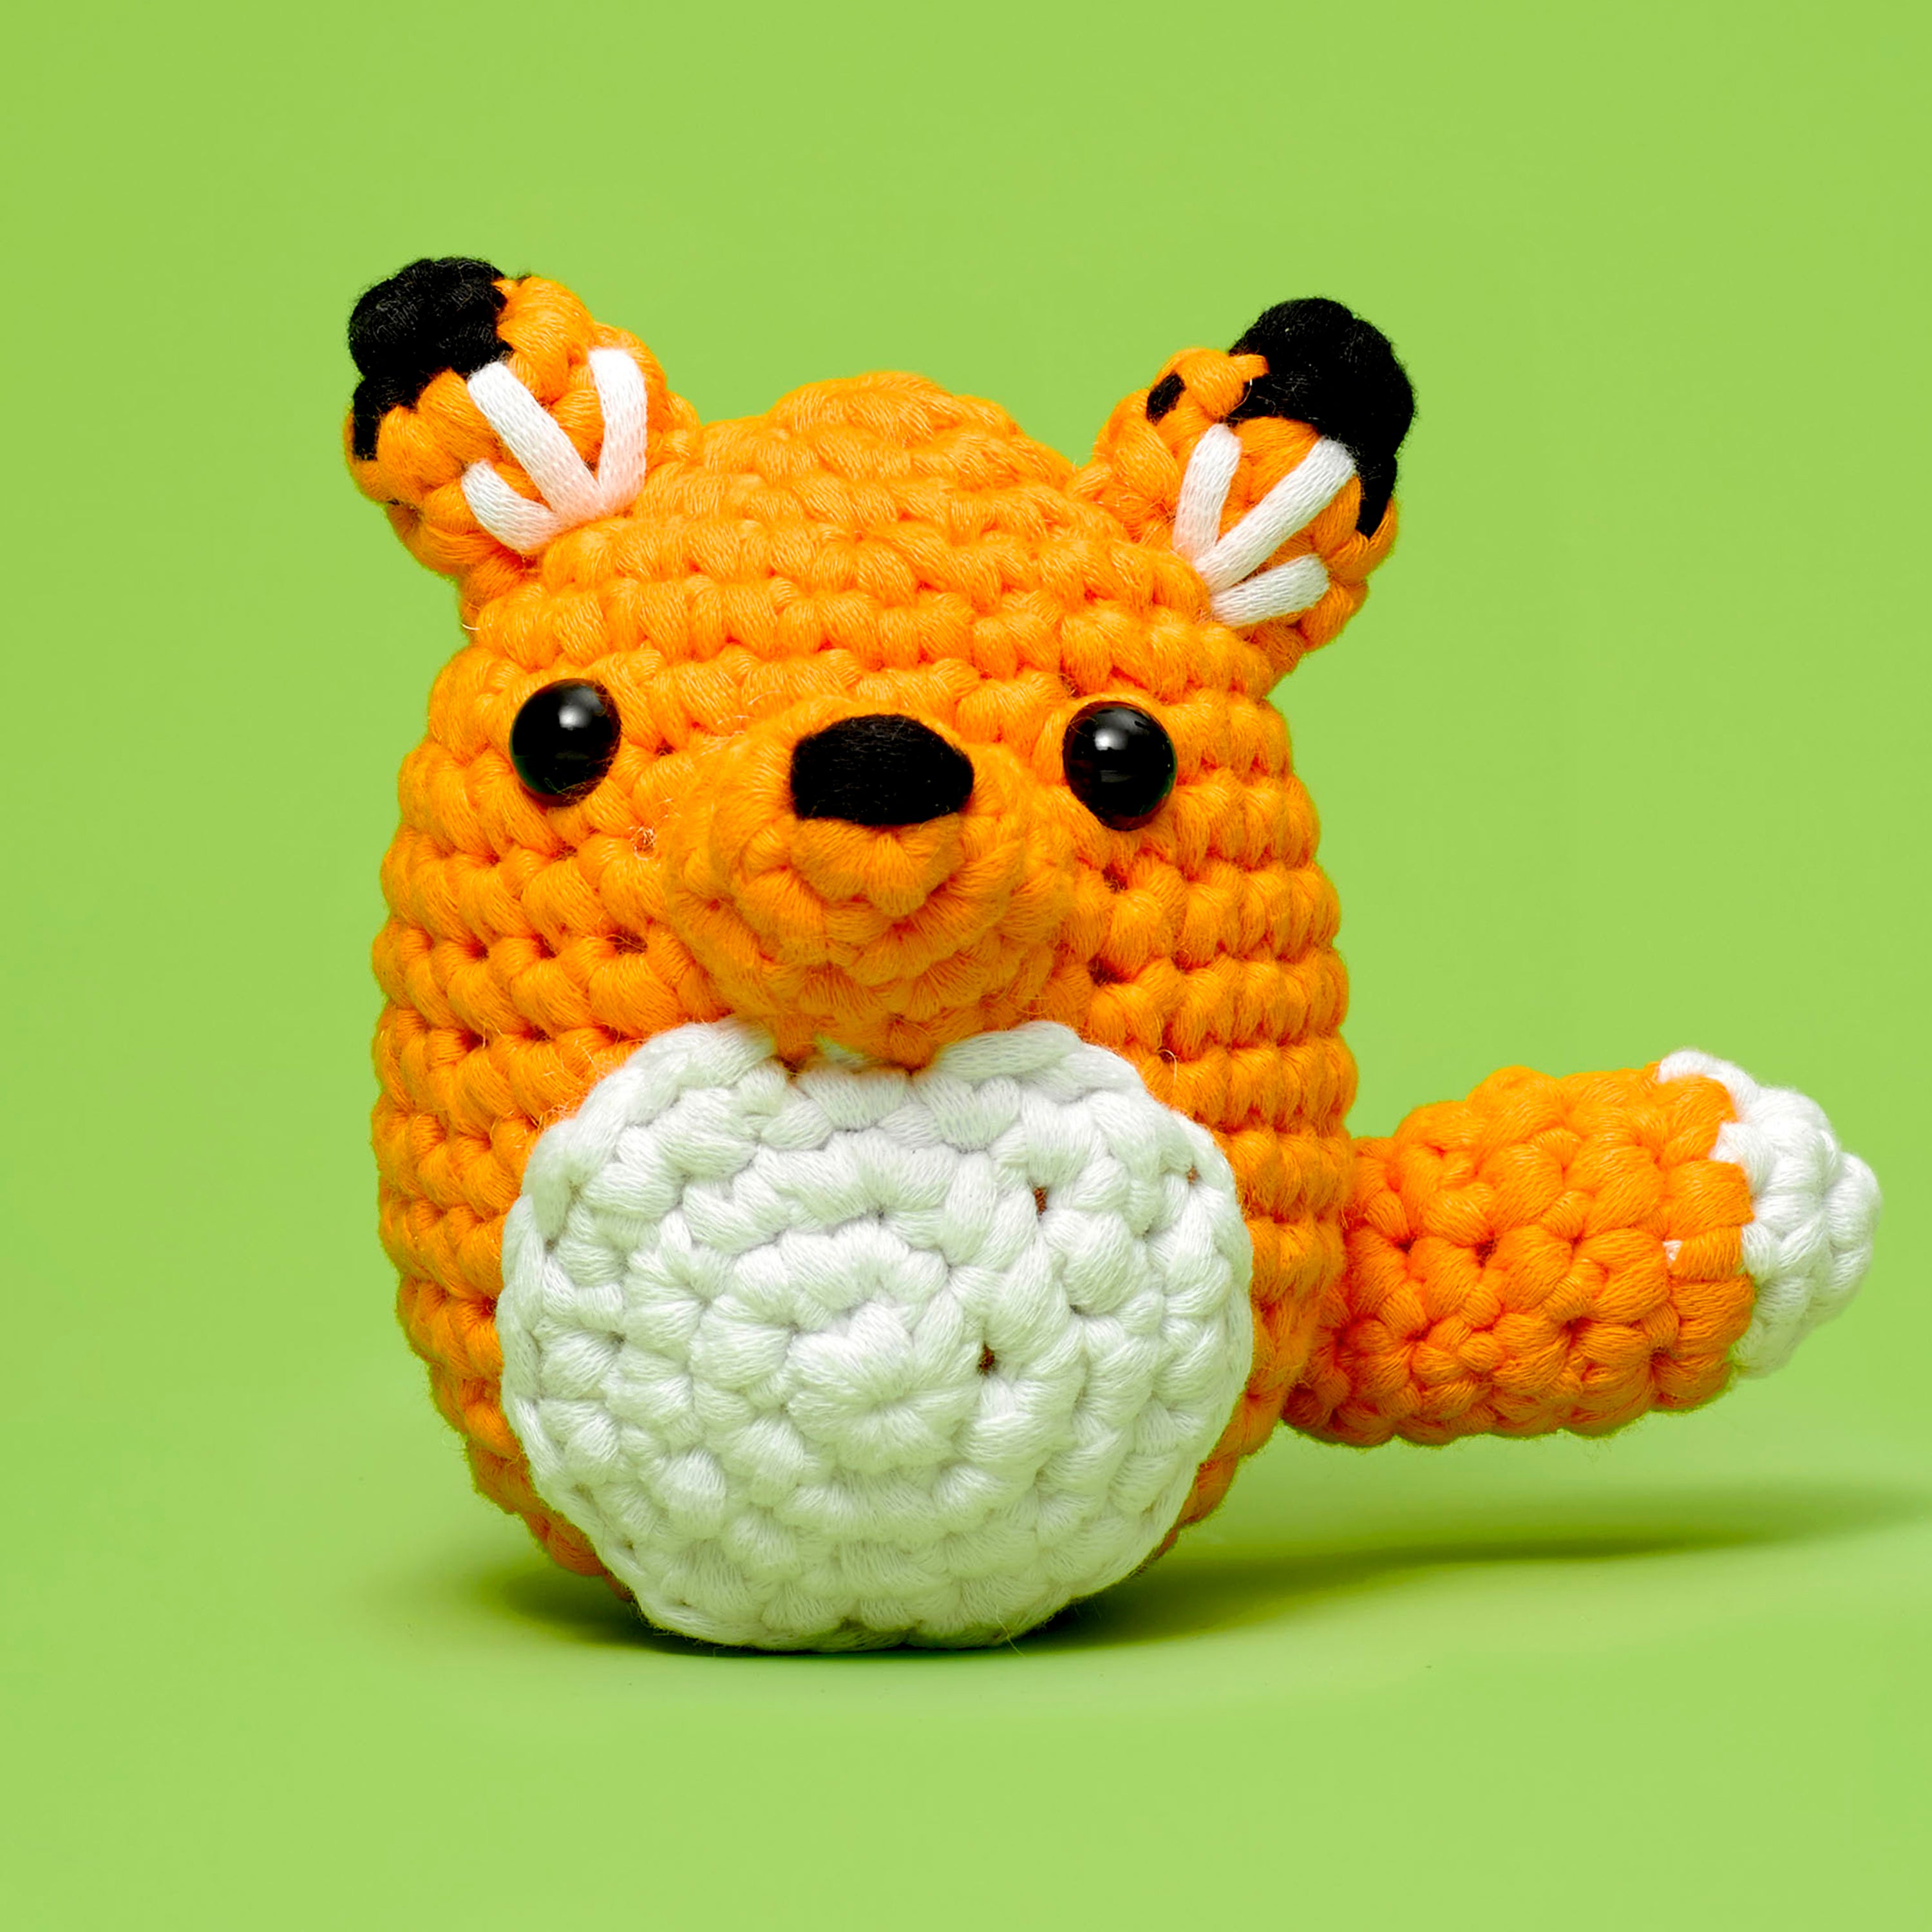 Baiyou crochet kit for beginners - cute cat, beginner crochet starter kit  for complete beginners adults, crocheting knitting kit